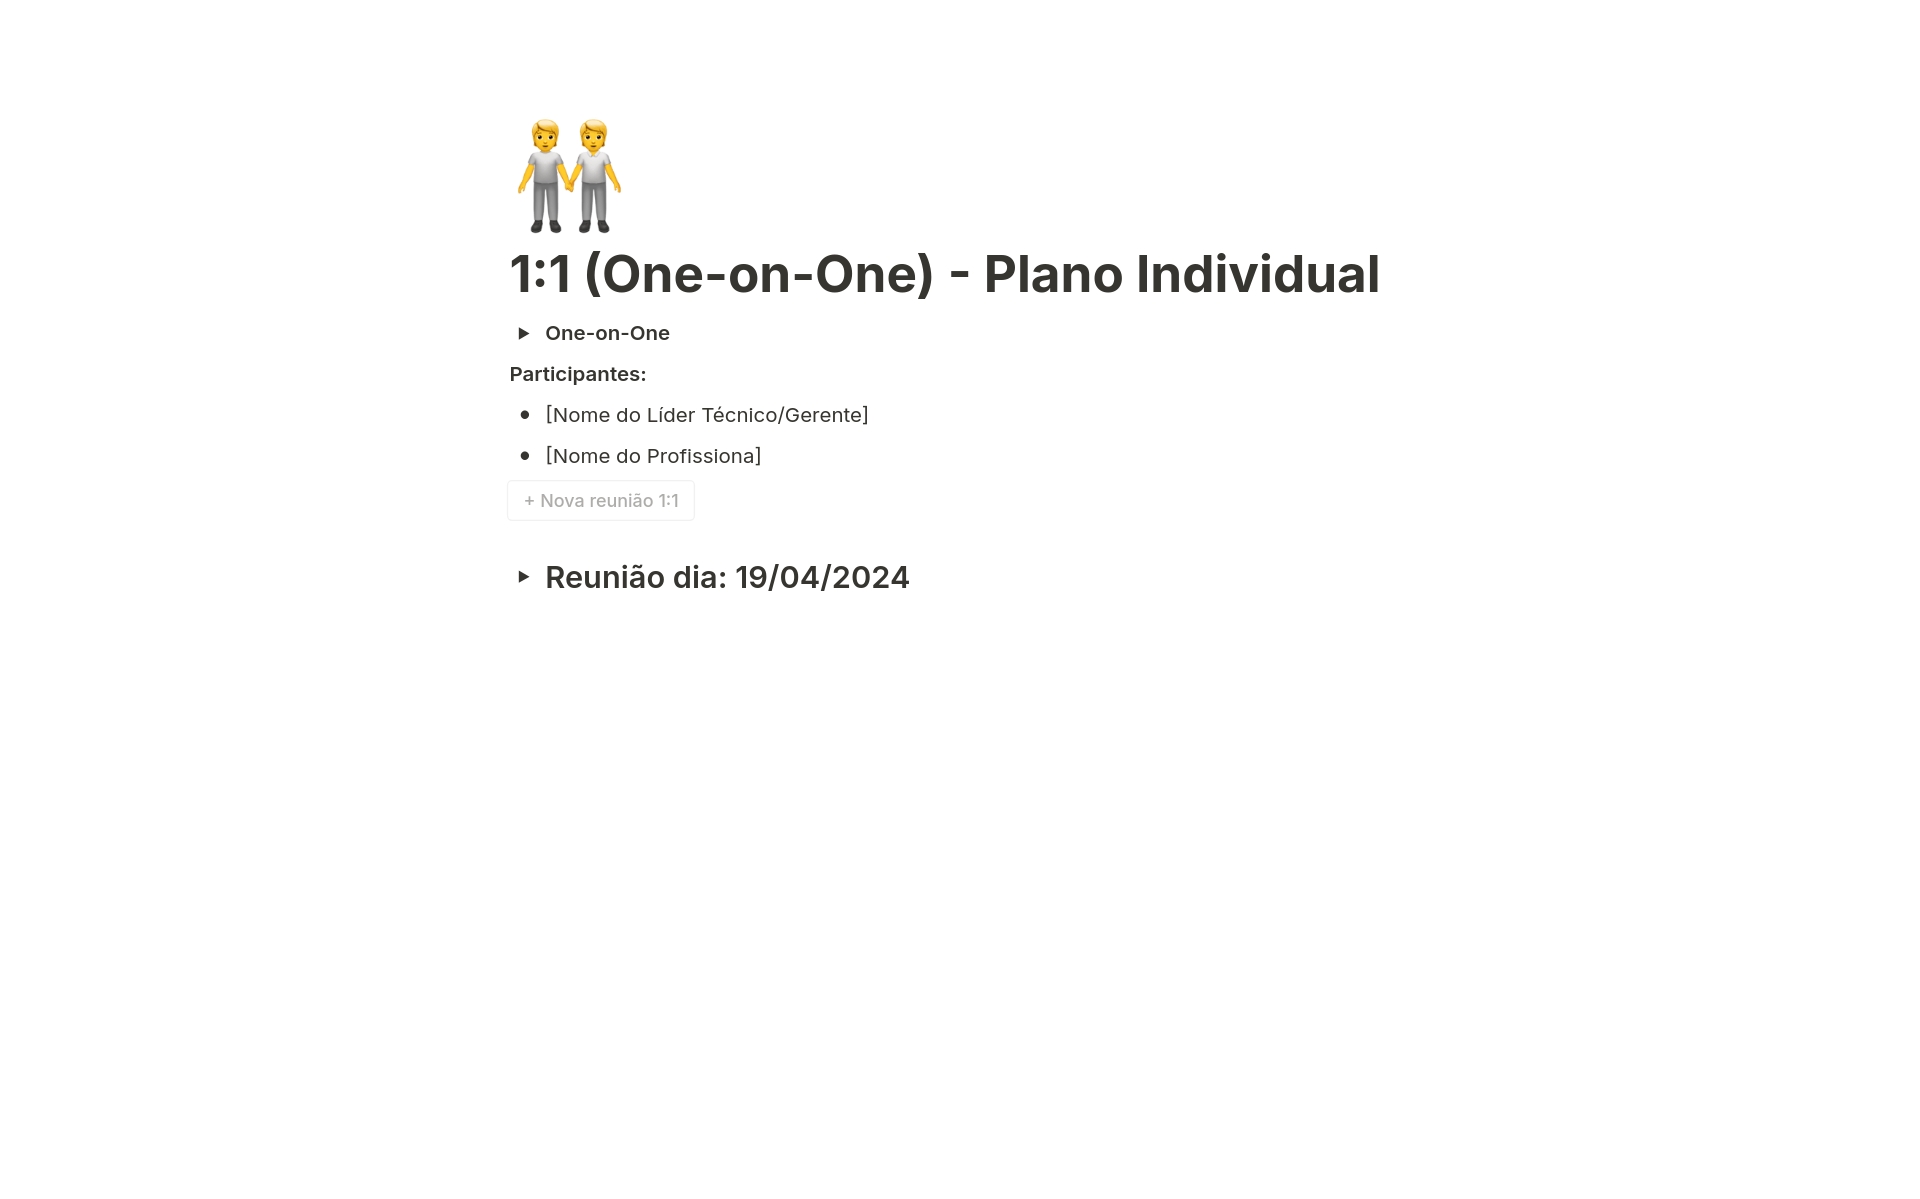 Vista previa de plantilla para 1:1 (One-on-One) - Plano Individual